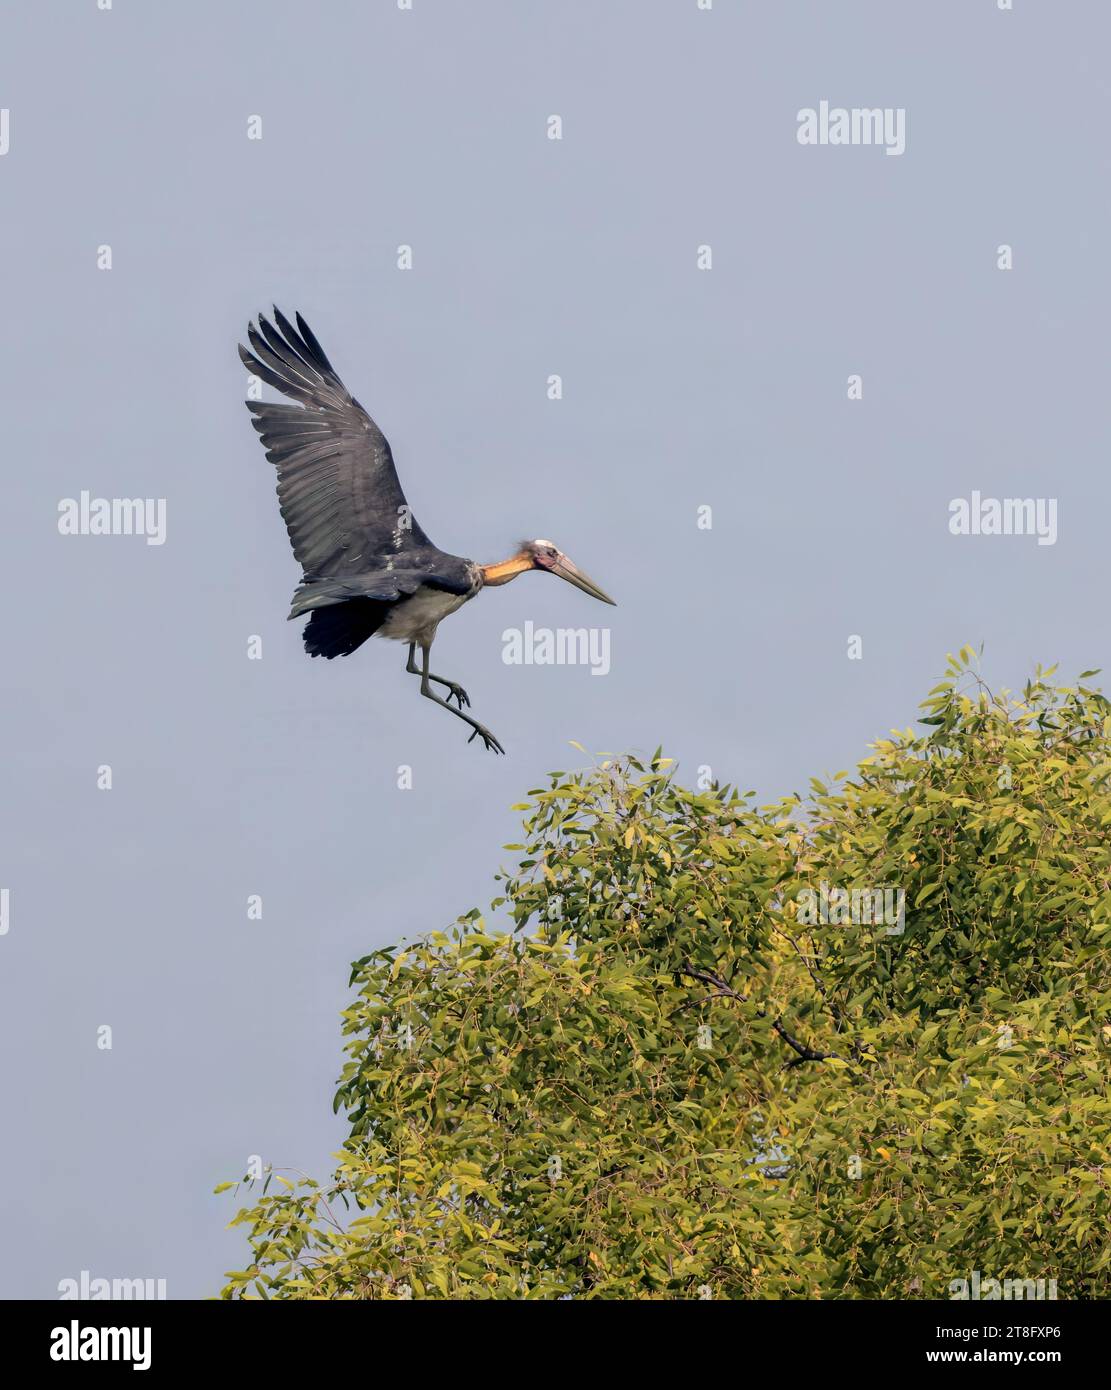 Kleiner Adjutant ist ein großer Watvogel in der Storchfamilie Ciconiidae. Dieses Foto wurde aus dem Sundarbans-Nationalpark in Bangladesch gemacht. Stockfoto